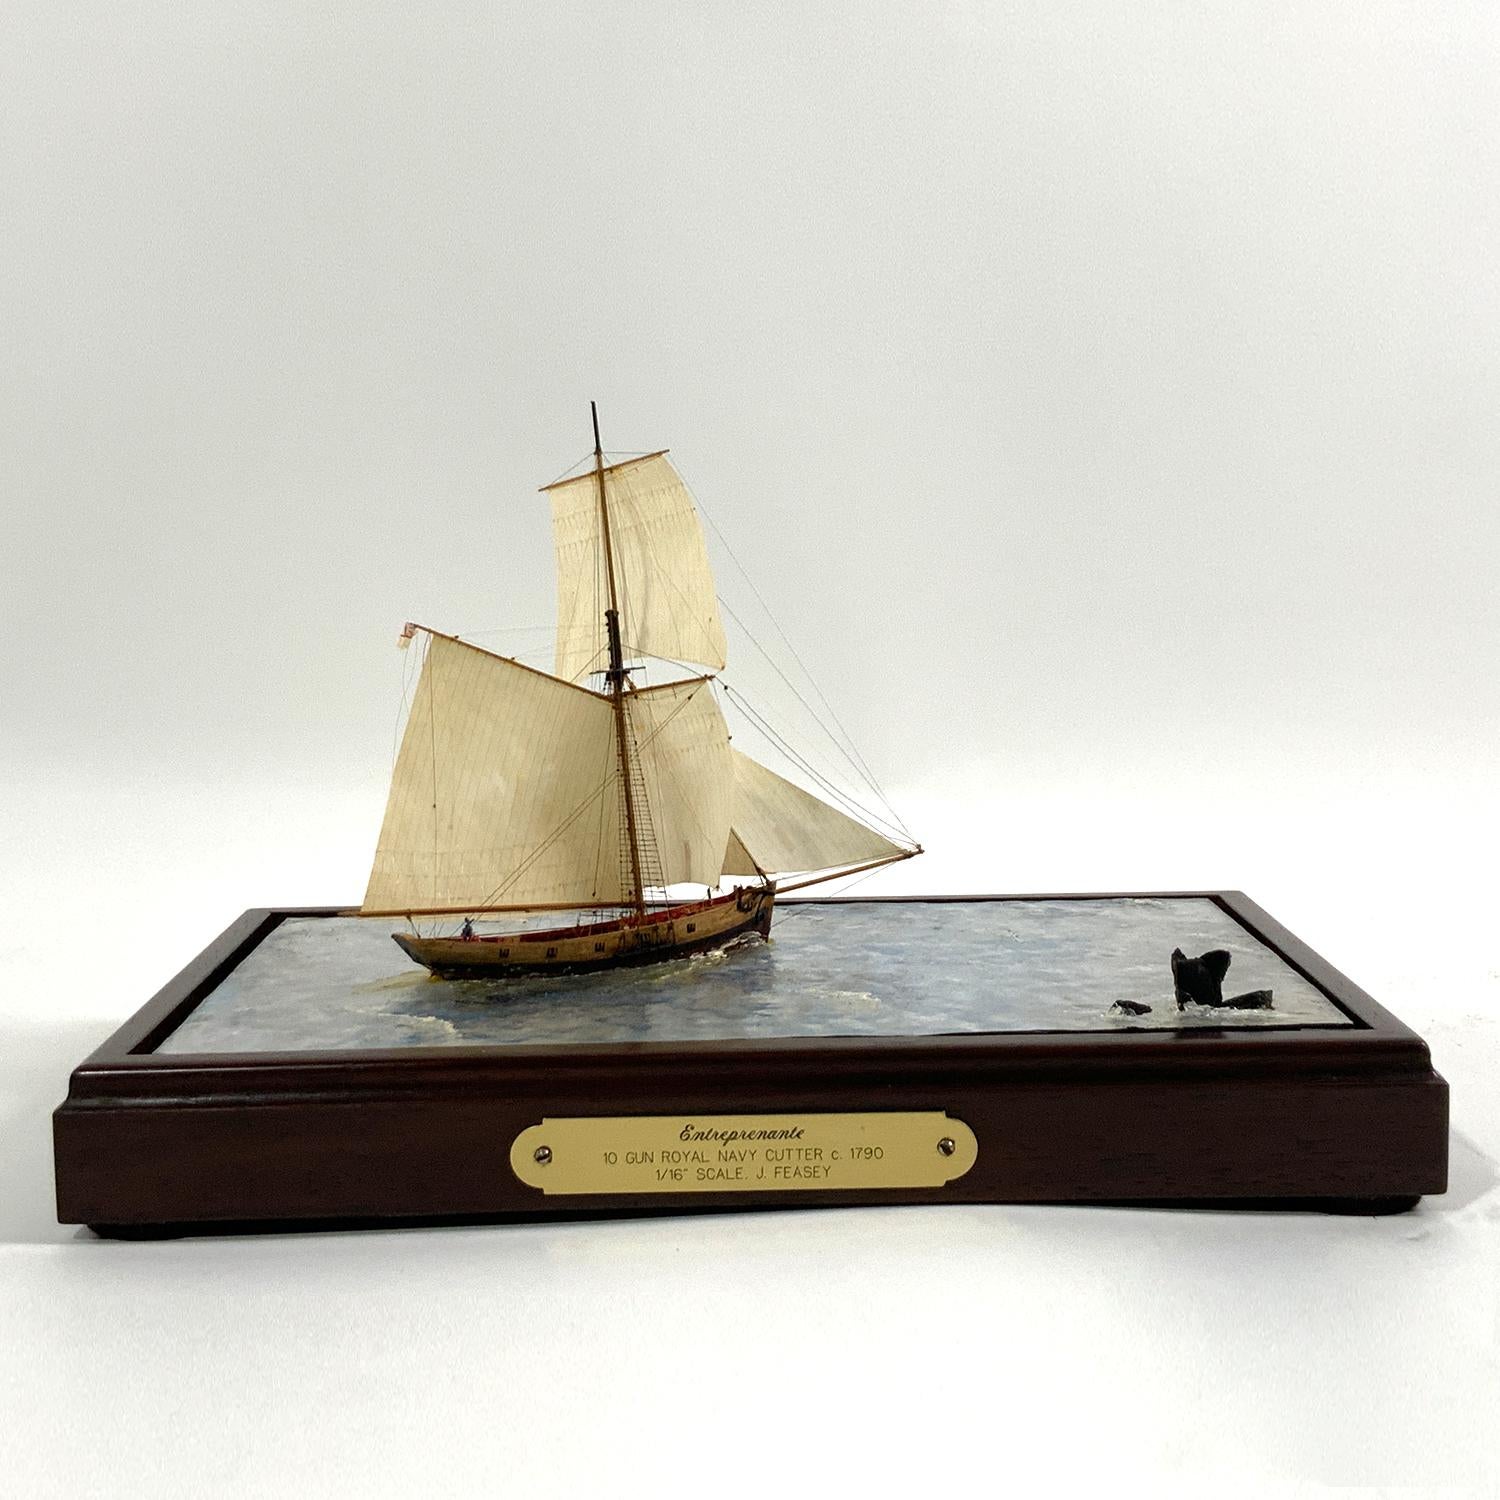 Diorama en eau claire montrant le cotre de la Royal Navy à dix canons, Entreprenante, vers 1790. Le modèle est construit à l'échelle d'un seizième de pouce égal à un pied. Le navire semble naviguer en eau claire et profonde. Une technique